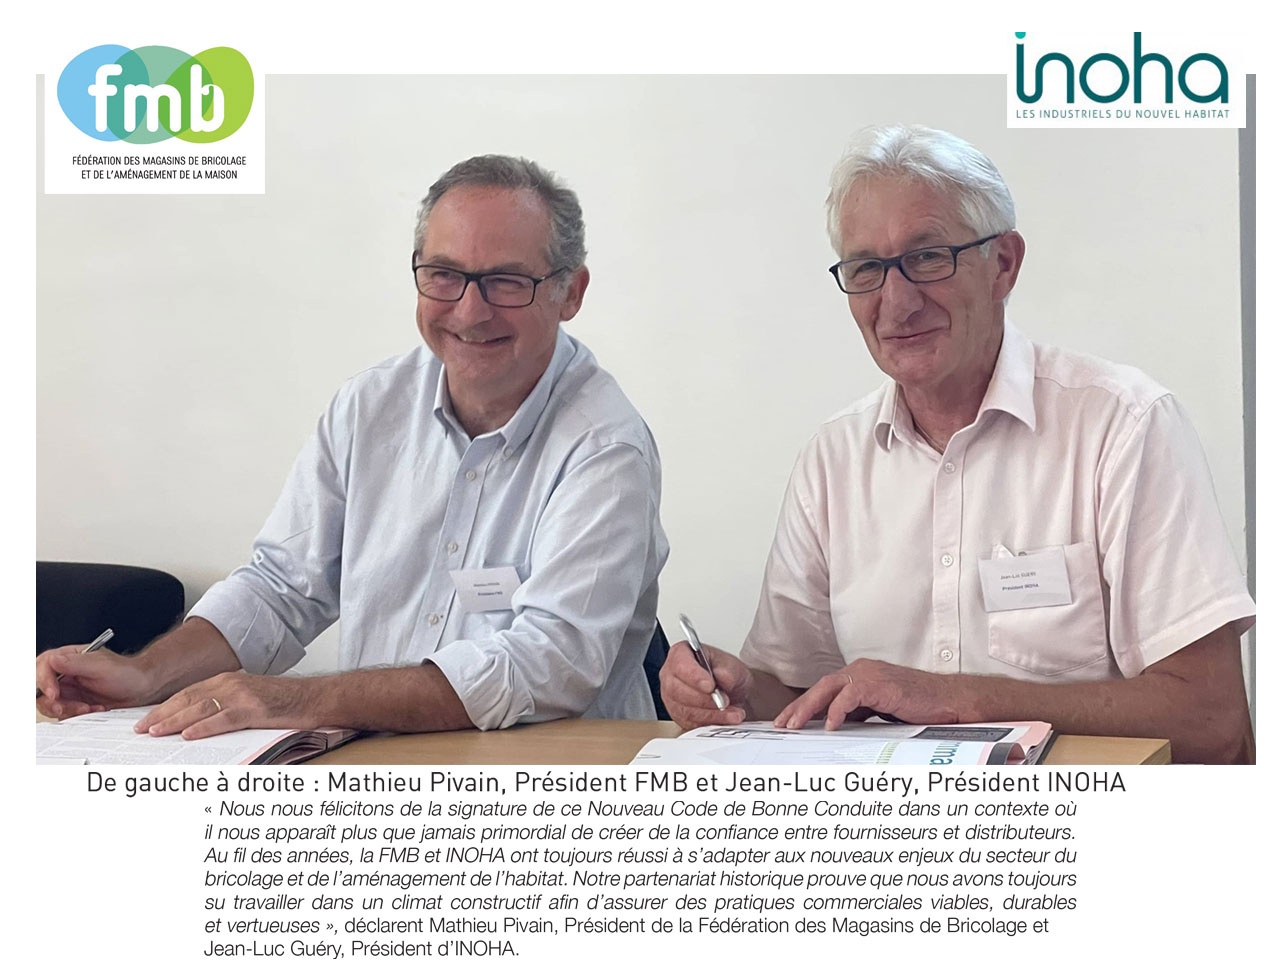 La FMB et INOHA confirment leur partenariat historique  et leur engagement mutuel pour des pratiques commerciales vertueuses